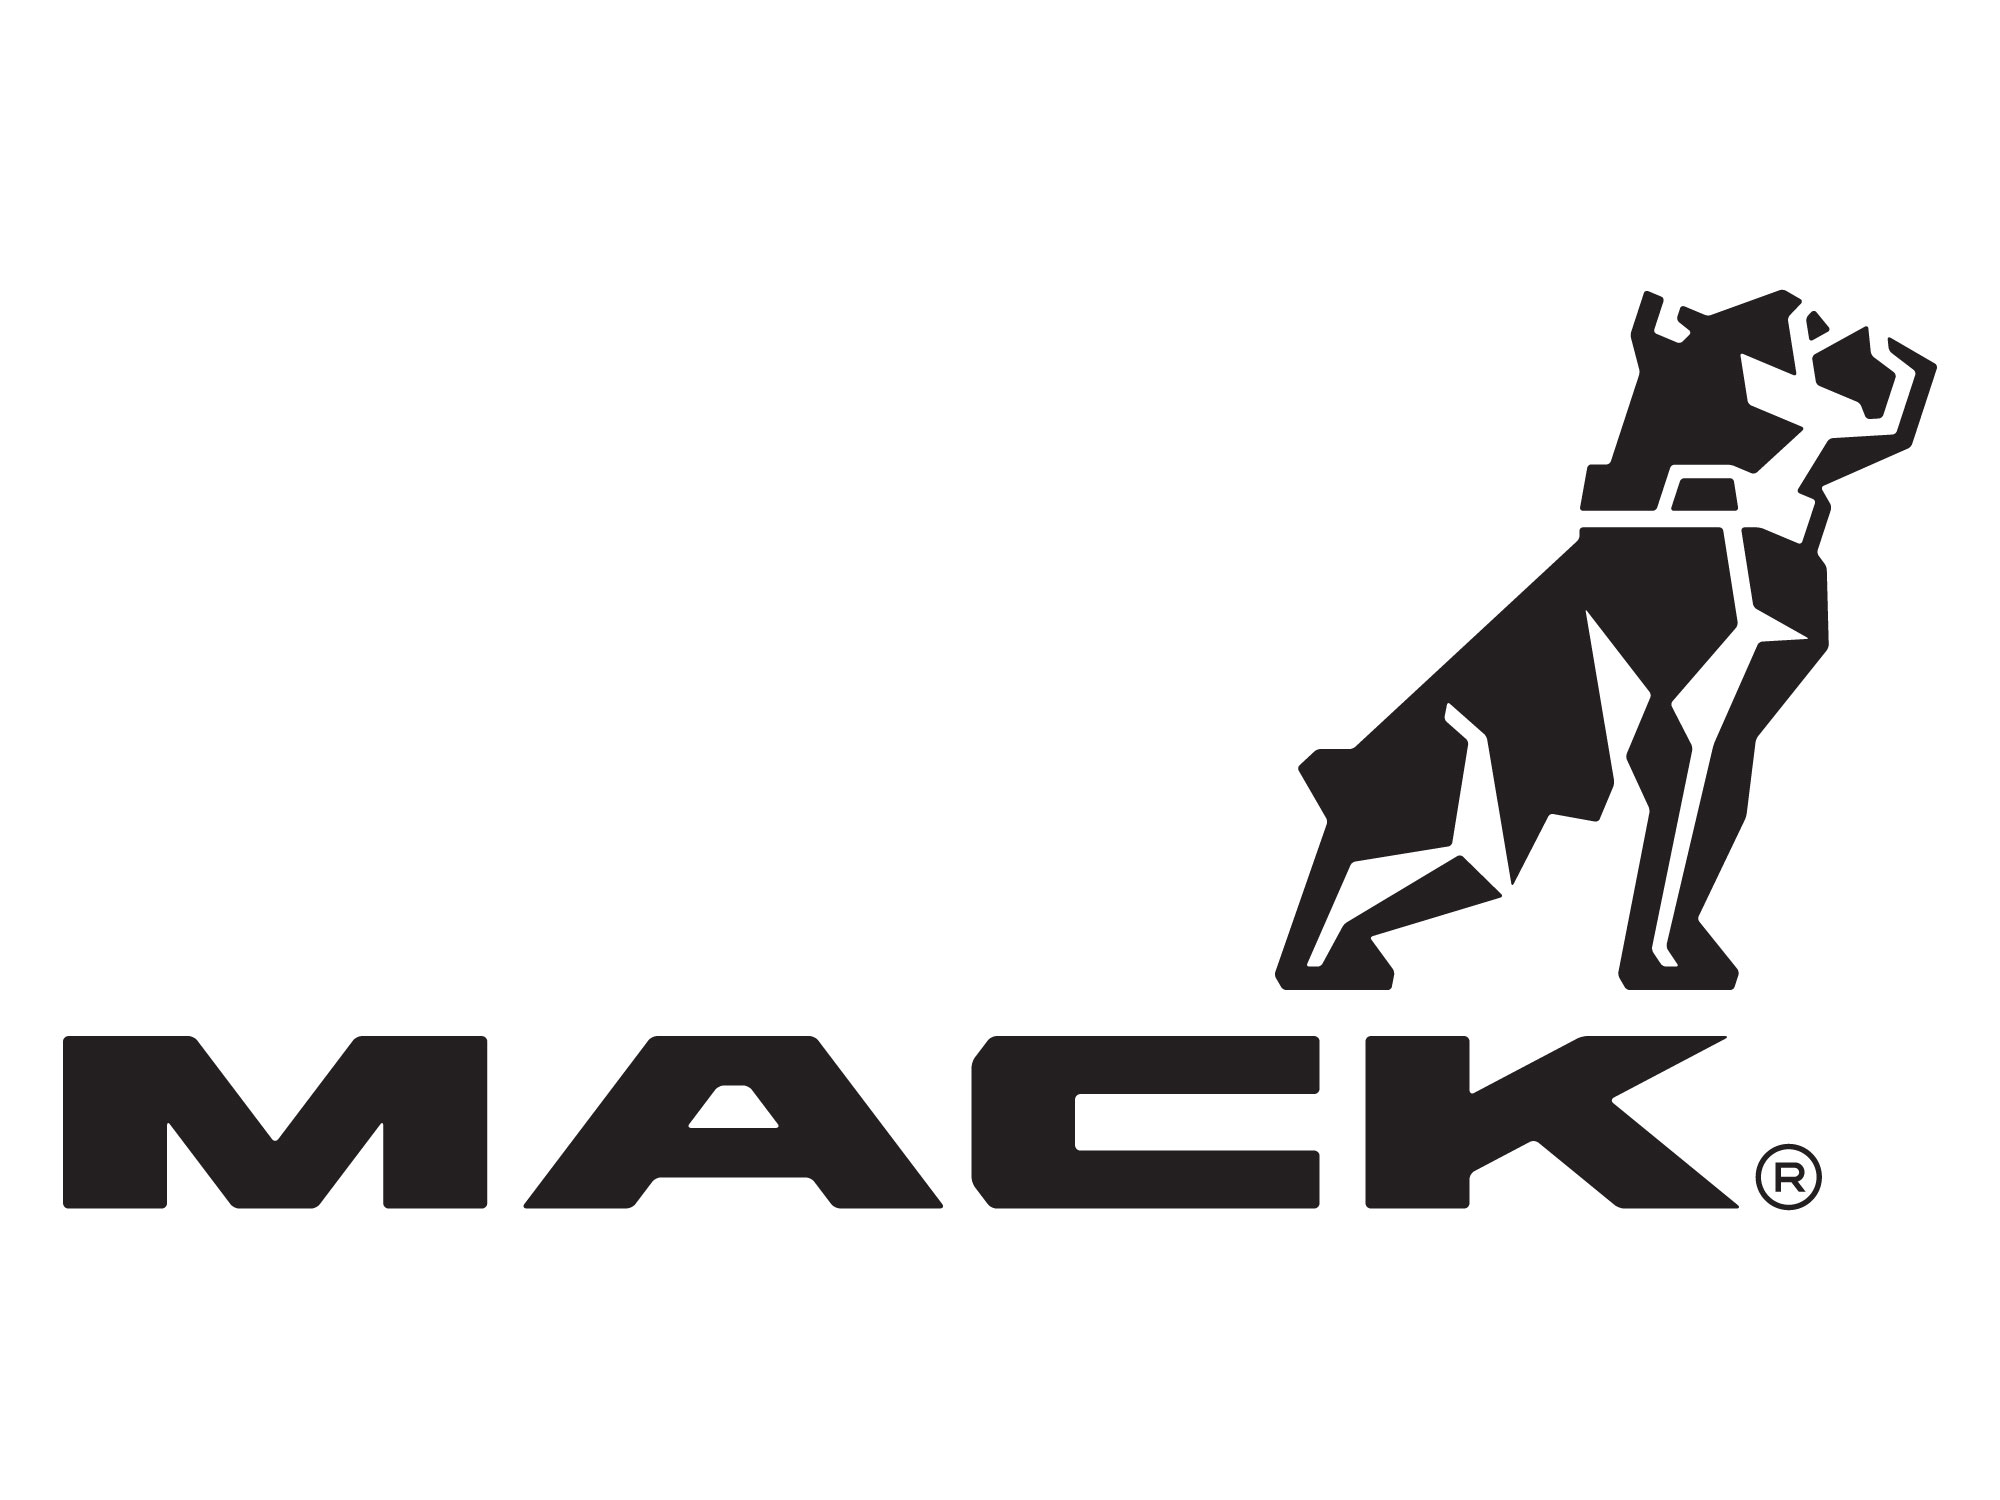 Mack's Logo - Mack announces rebranding effort, new logo